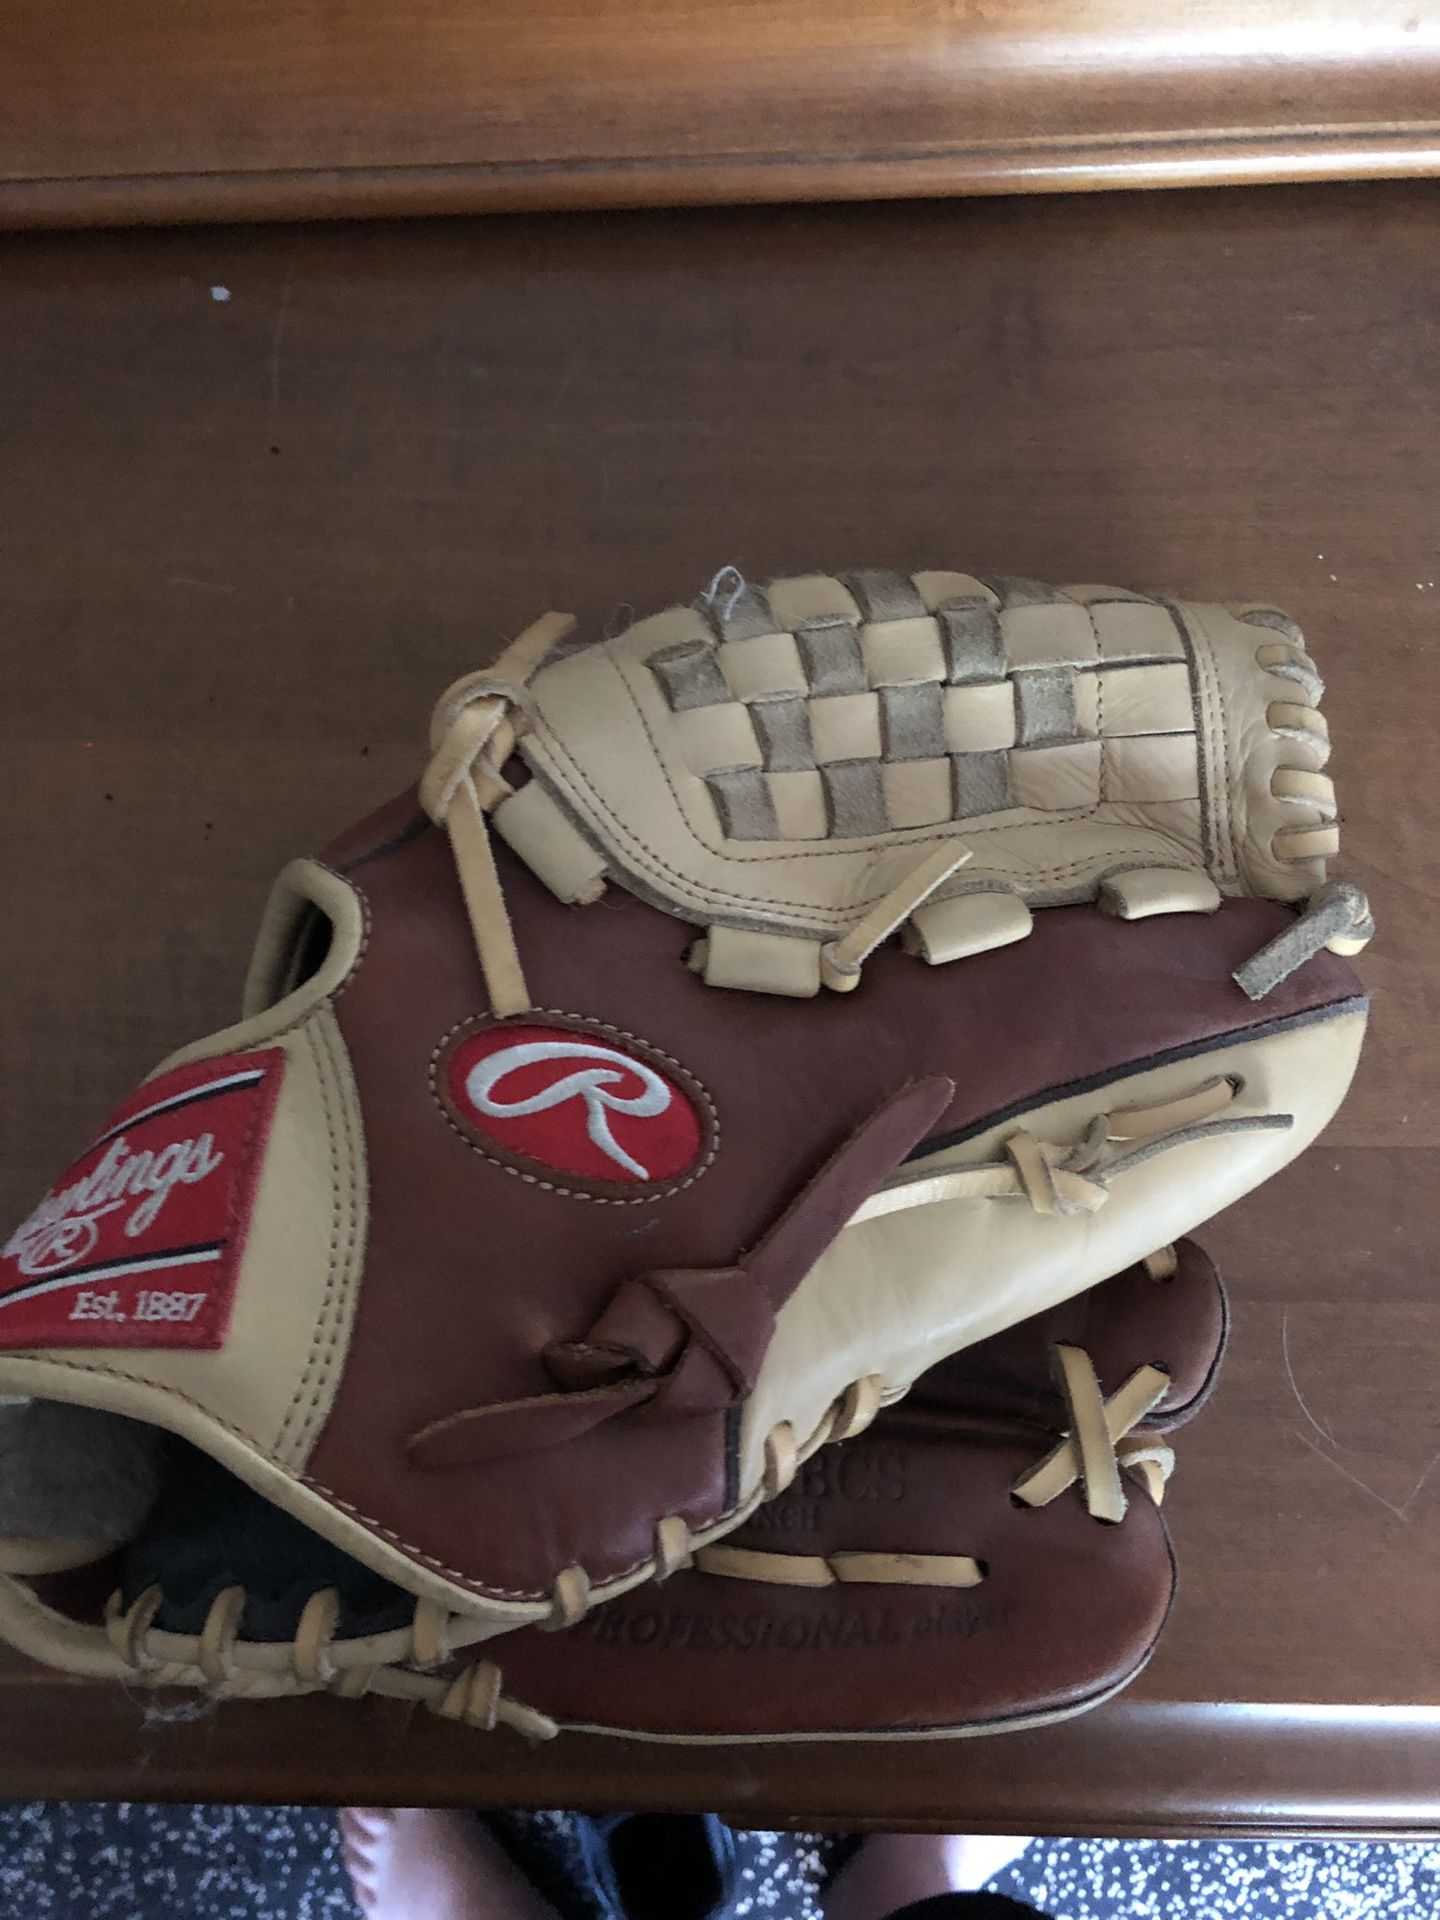 Rawlings baseball glove barley used